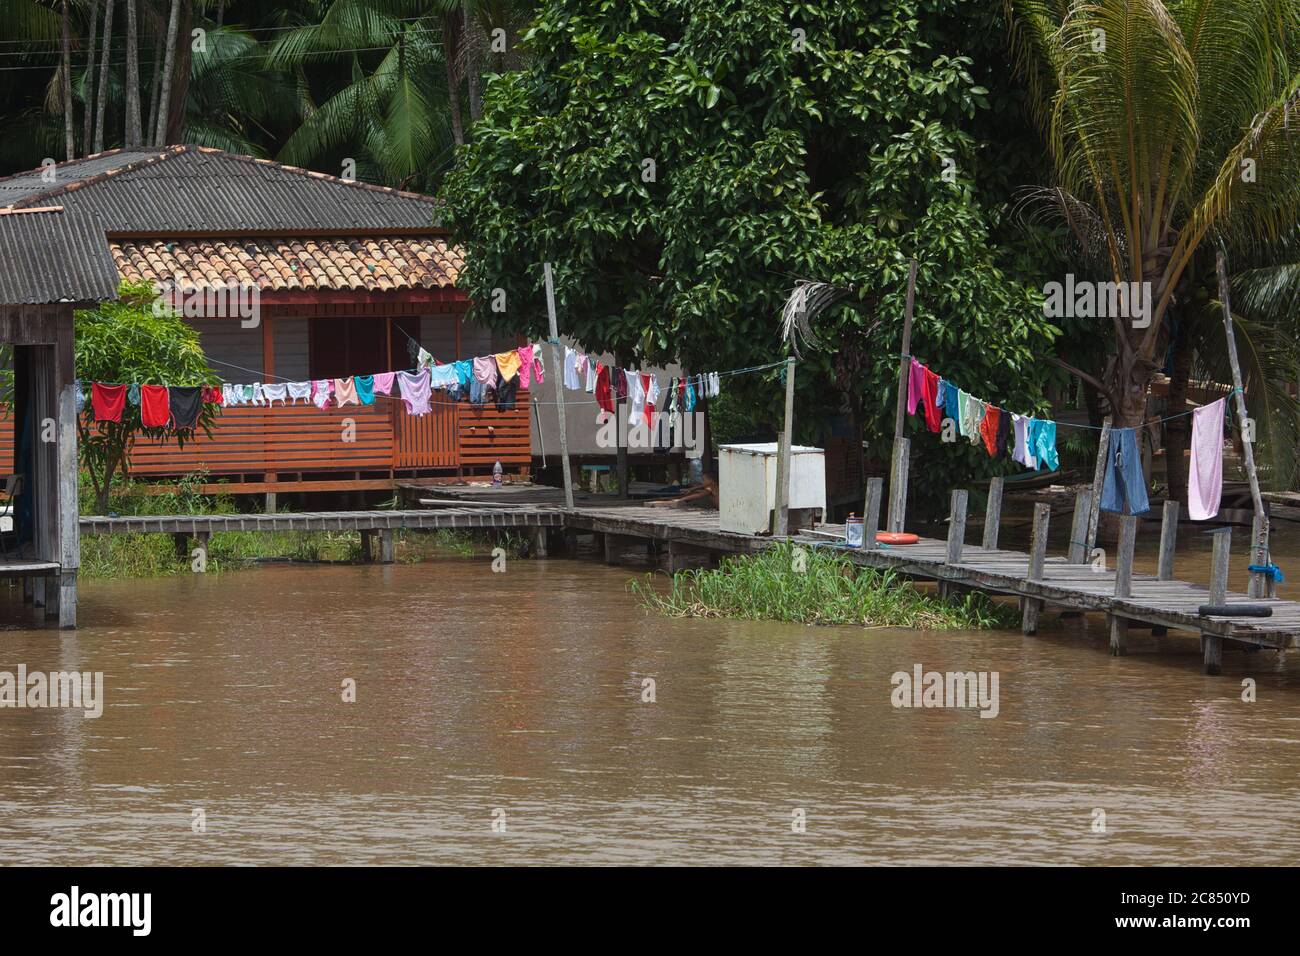 Ein typisches Haus auf Stelzen und Steg mit Wäscheleinen hängen, am Ufer des Amazonas in der Nähe von Macapa in Amapa Staat, Brasilien Stockfoto